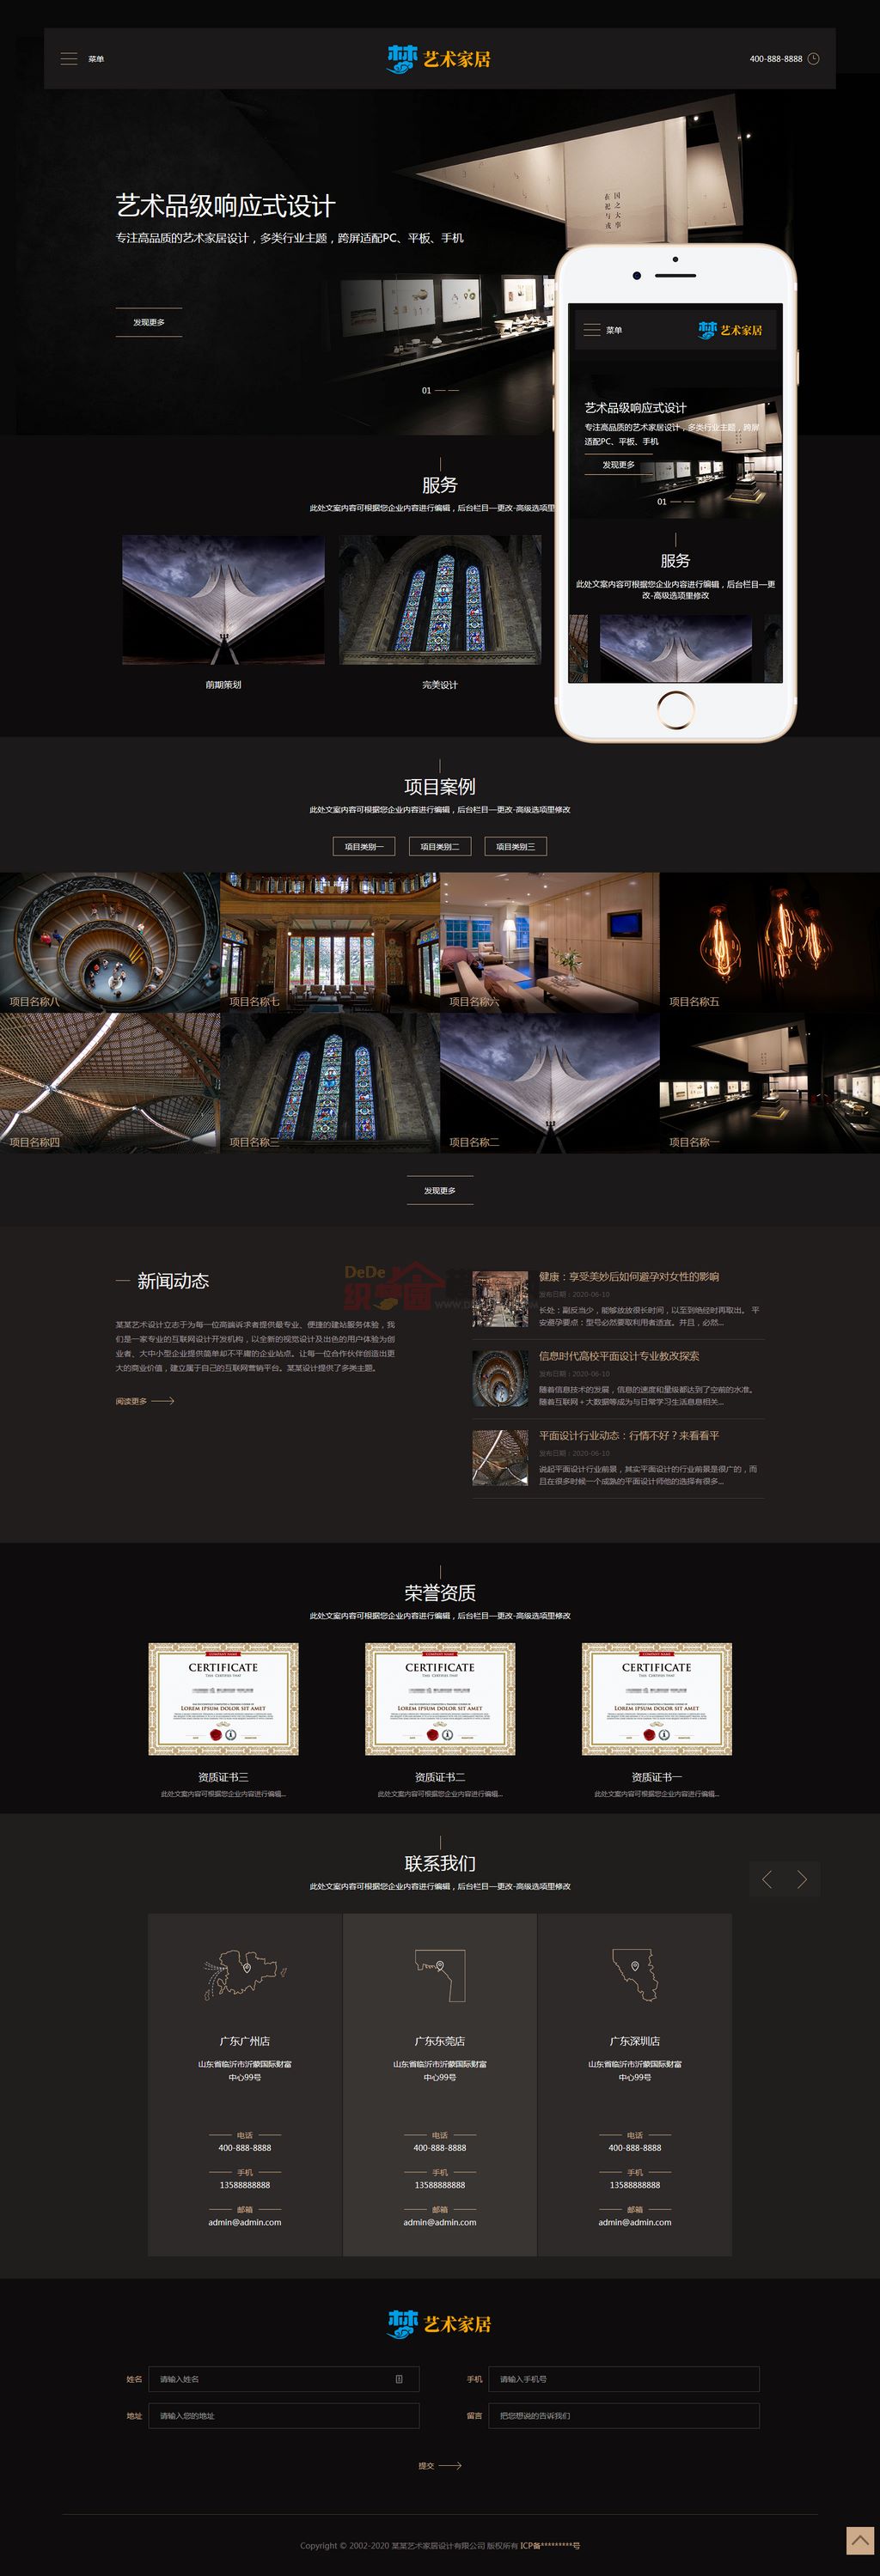 响应式艺术家居设计家装设计网站Wordpress企业模板截图